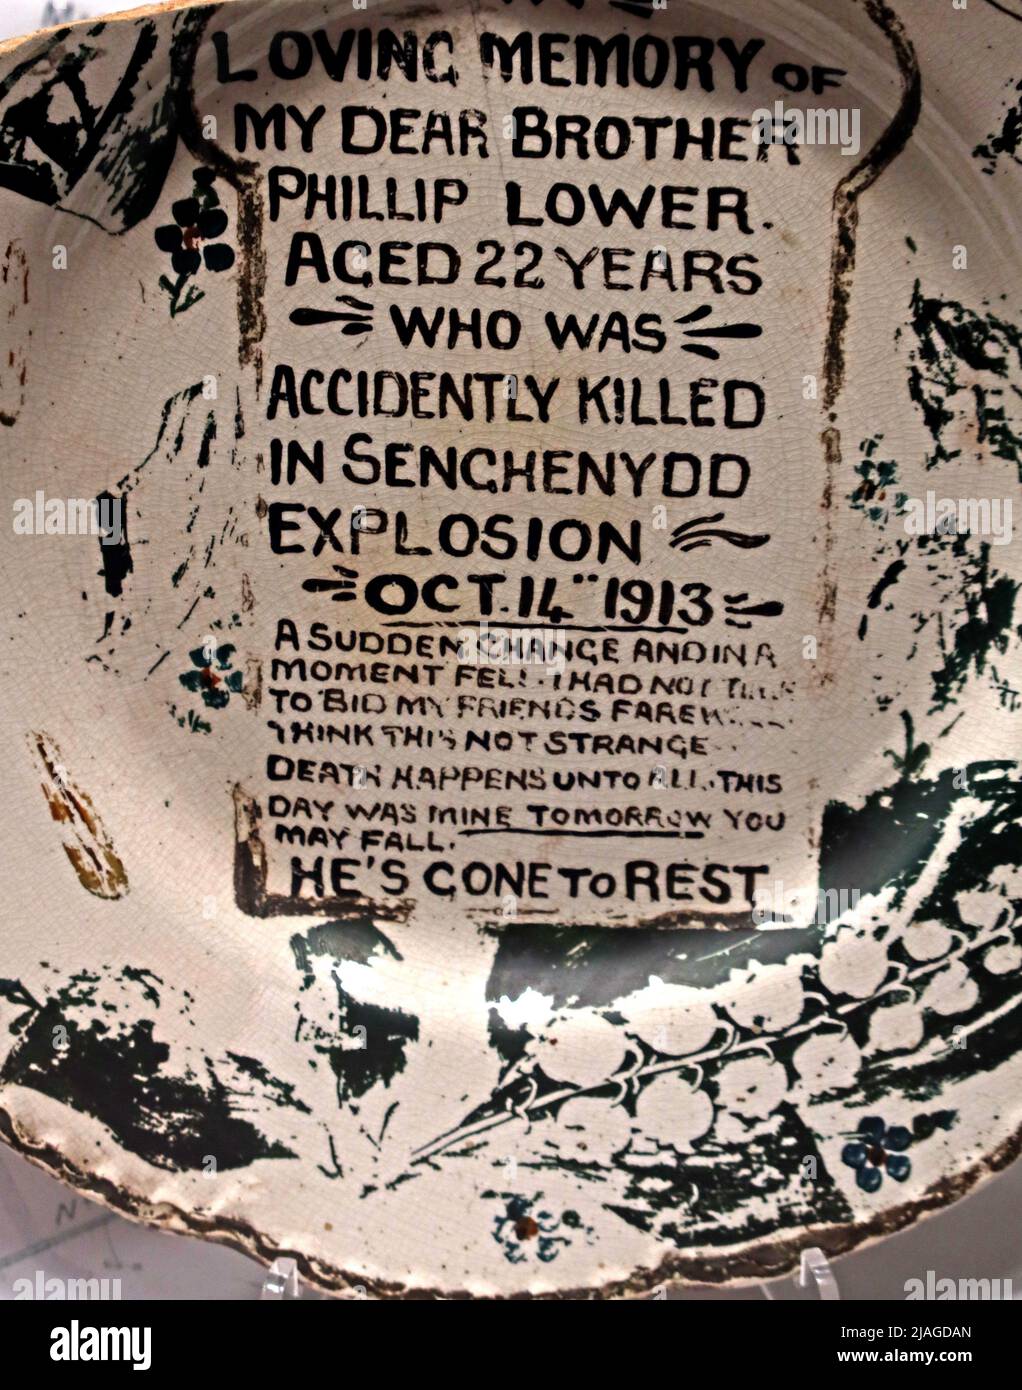 Memorial Plate, Phillip Lower, 22 Jahre alt, wurde versehentlich getötet, bei der Senchenydd-Explosion, Oktober 14. 1913 Stockfoto